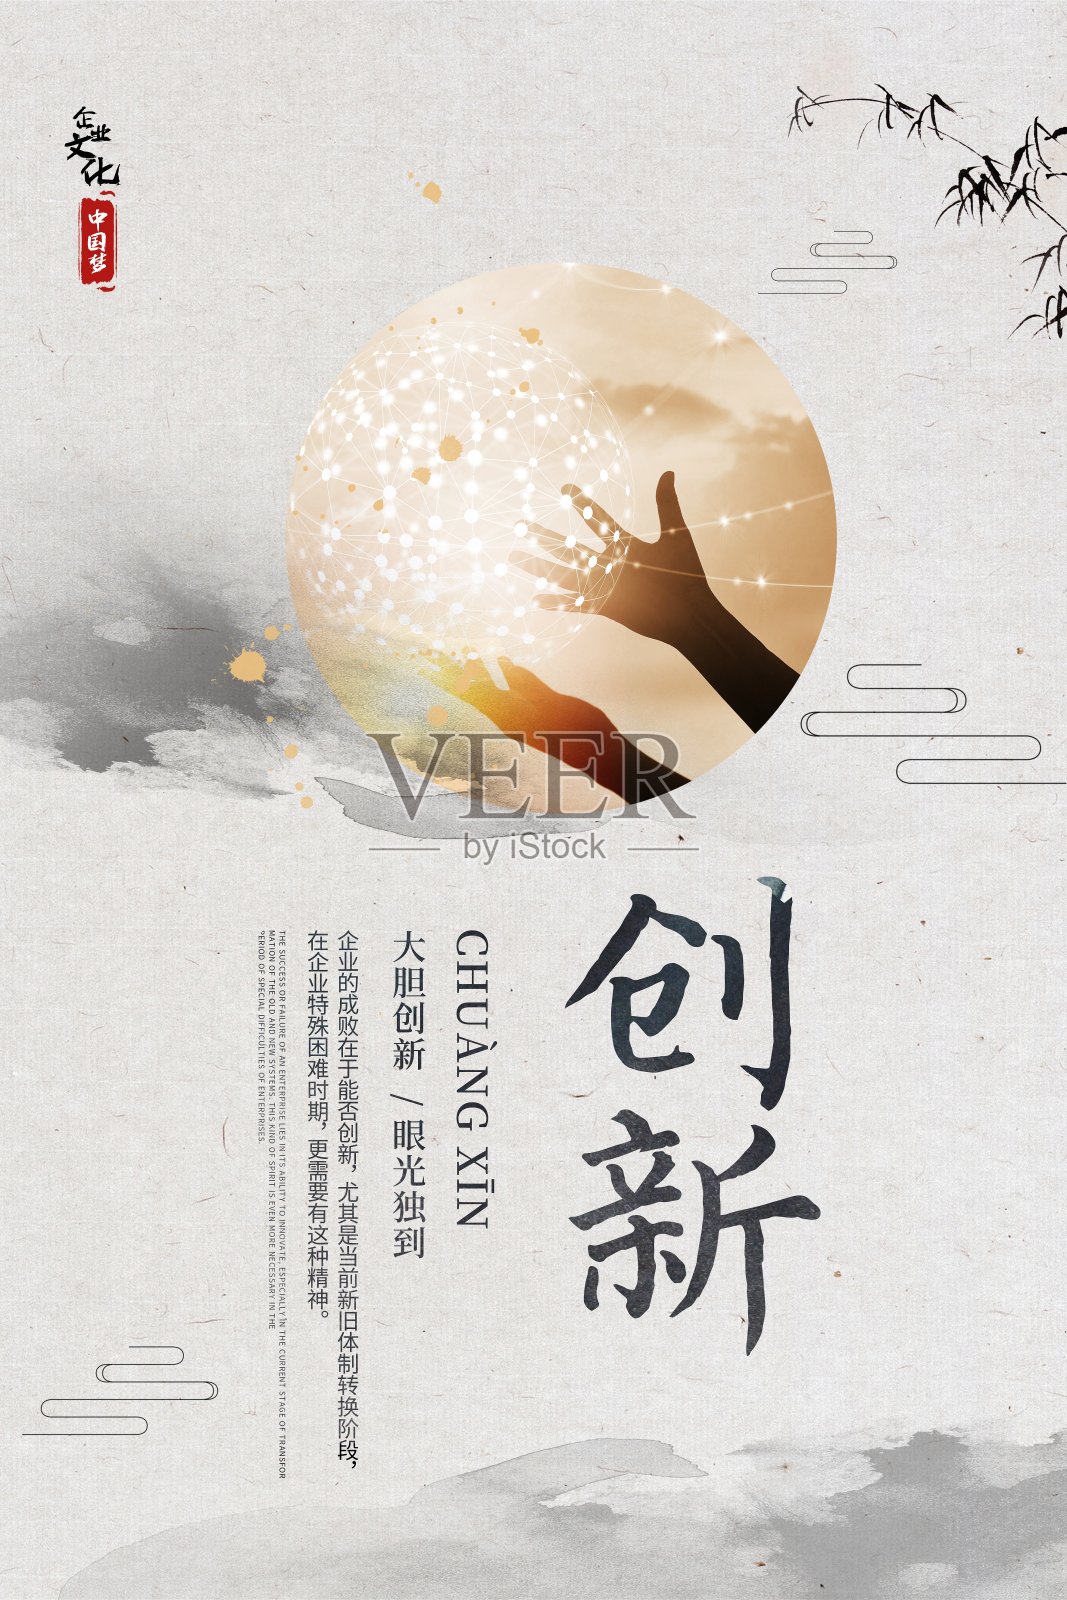 中国风企业文化创新海报设计模板素材